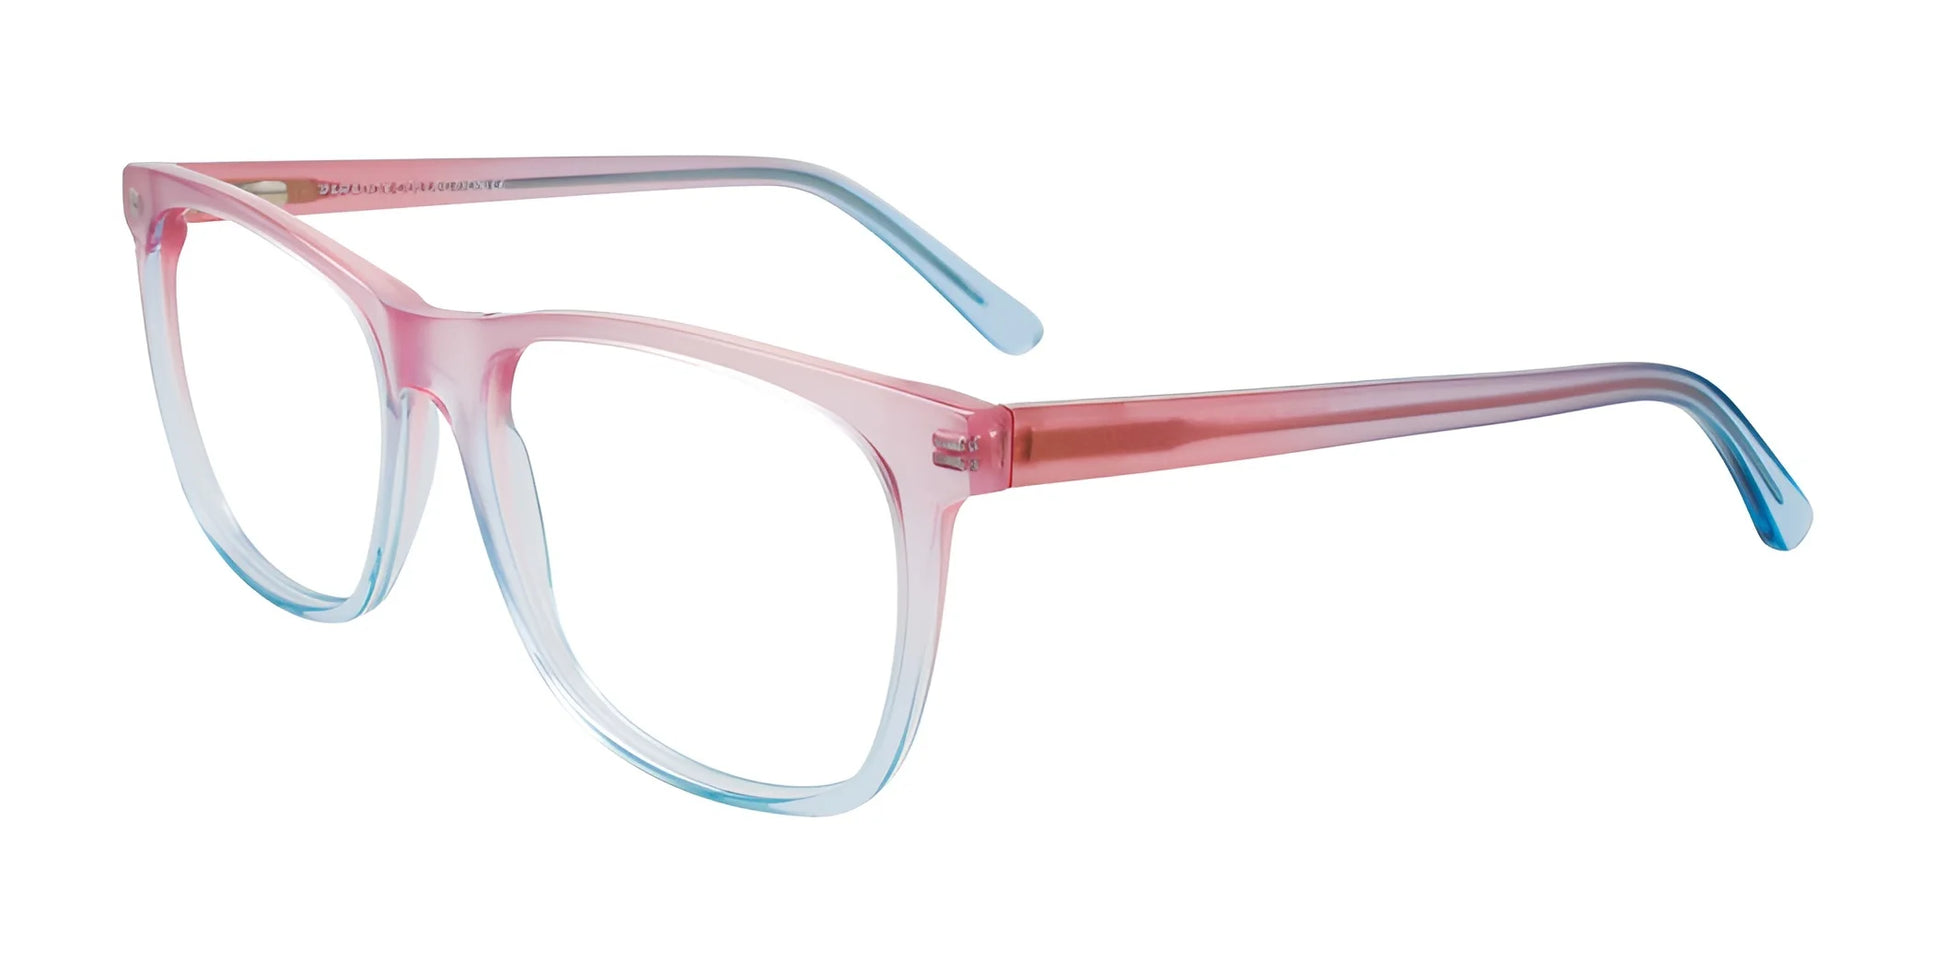 Paradox P5079 Eyeglasses Crystal Light Pink & Crystal Light Blue